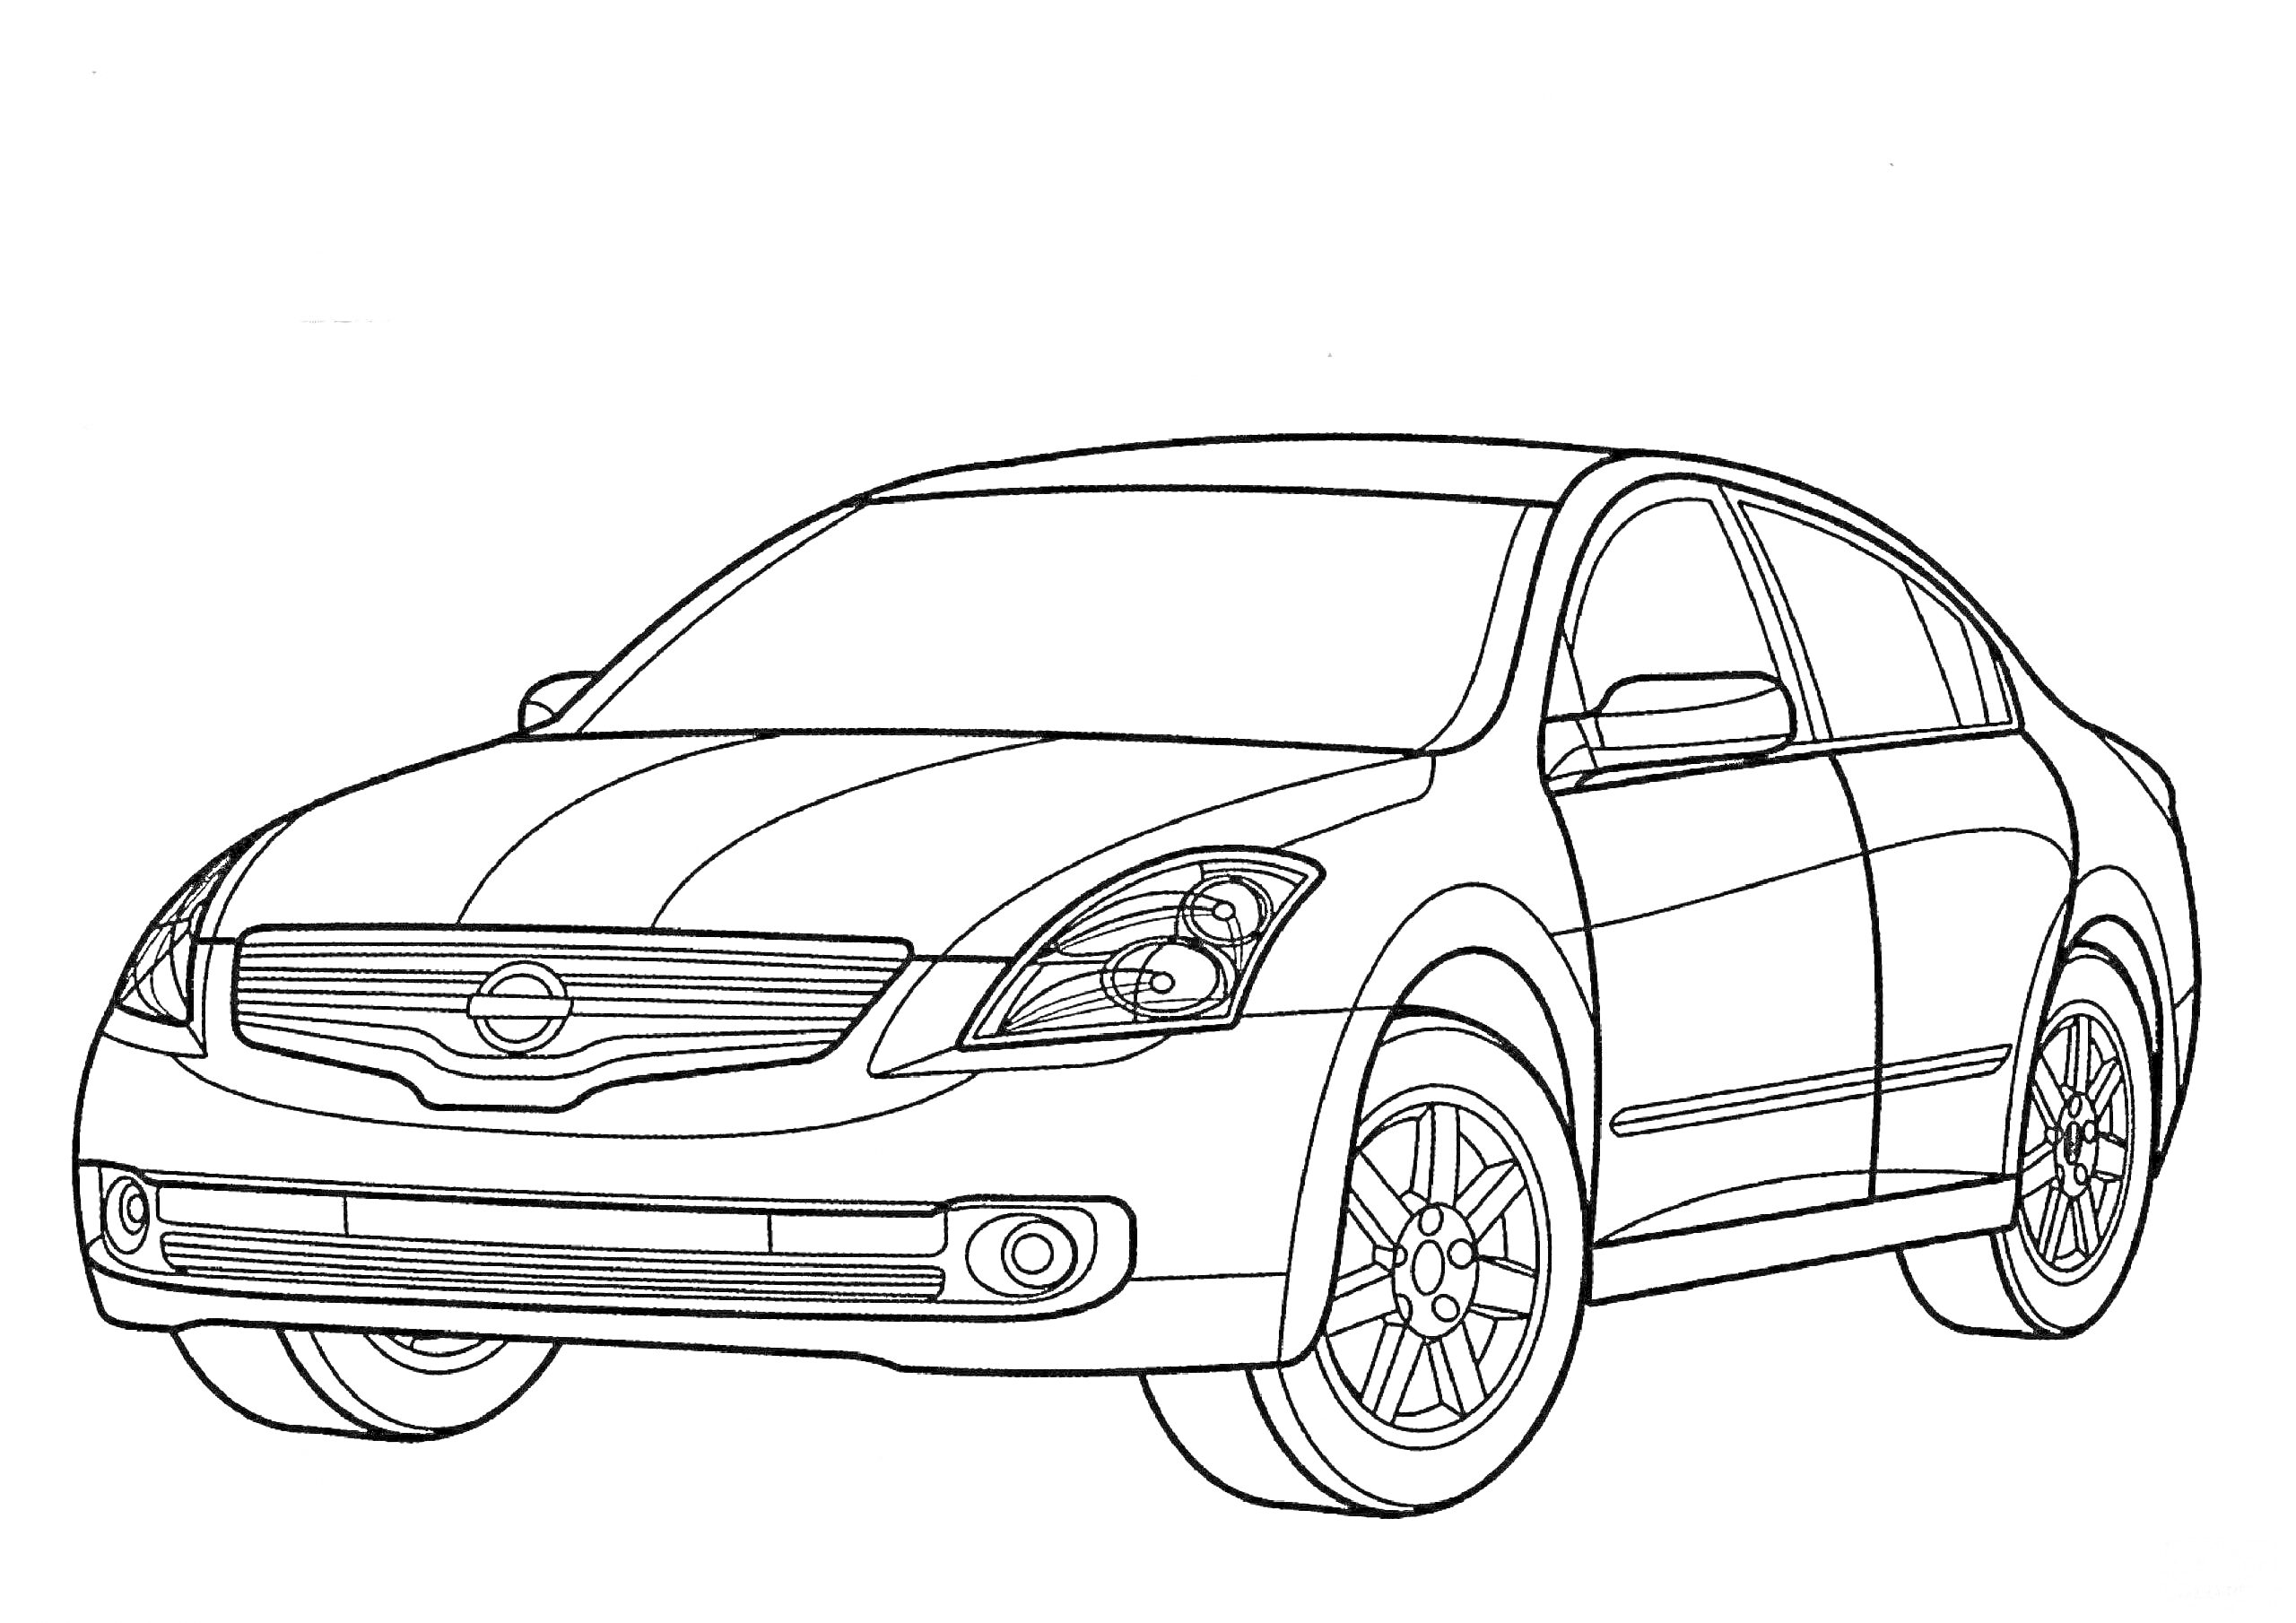 Раскраска Легковой автомобиль Nissan, вид спереди с видимым логотипом, фарами, капотом, боковыми зеркалами, лобовым стеклом, дверями, колесами